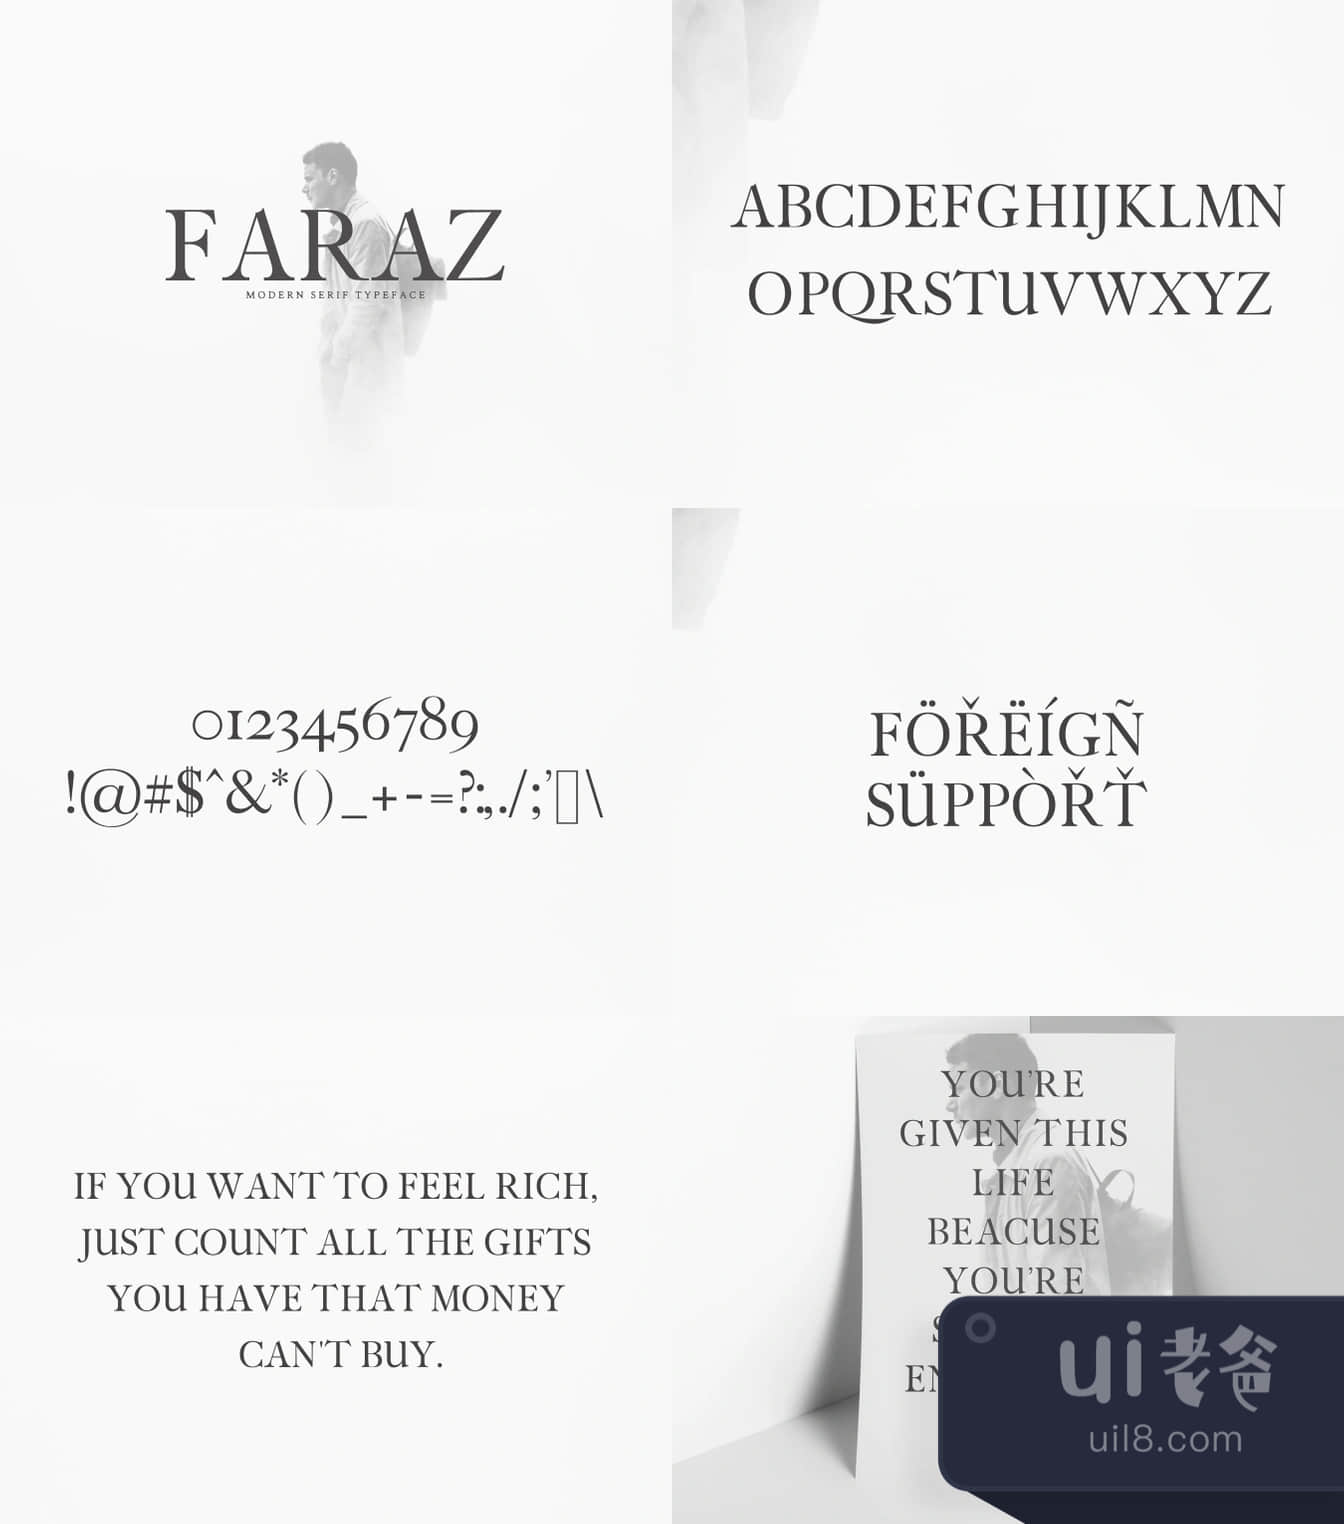 法拉兹现代塞夫字体 (Faraz Modern Serif)插图